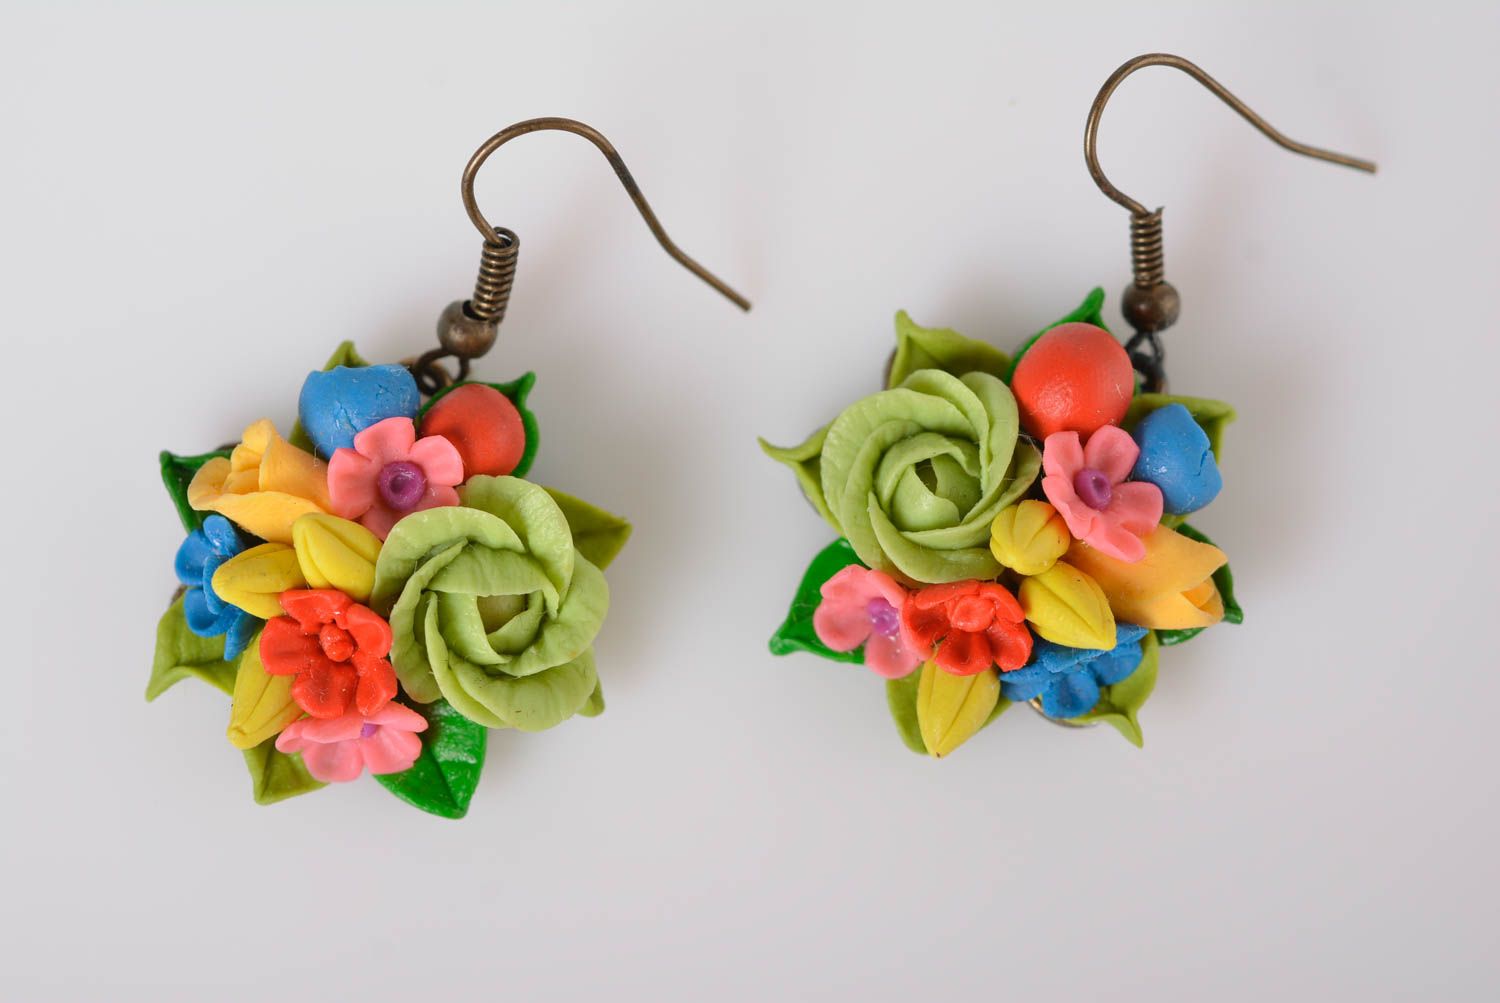 Handmade bijouterie porcelain earrings molded flower earrings designer jewelry photo 2